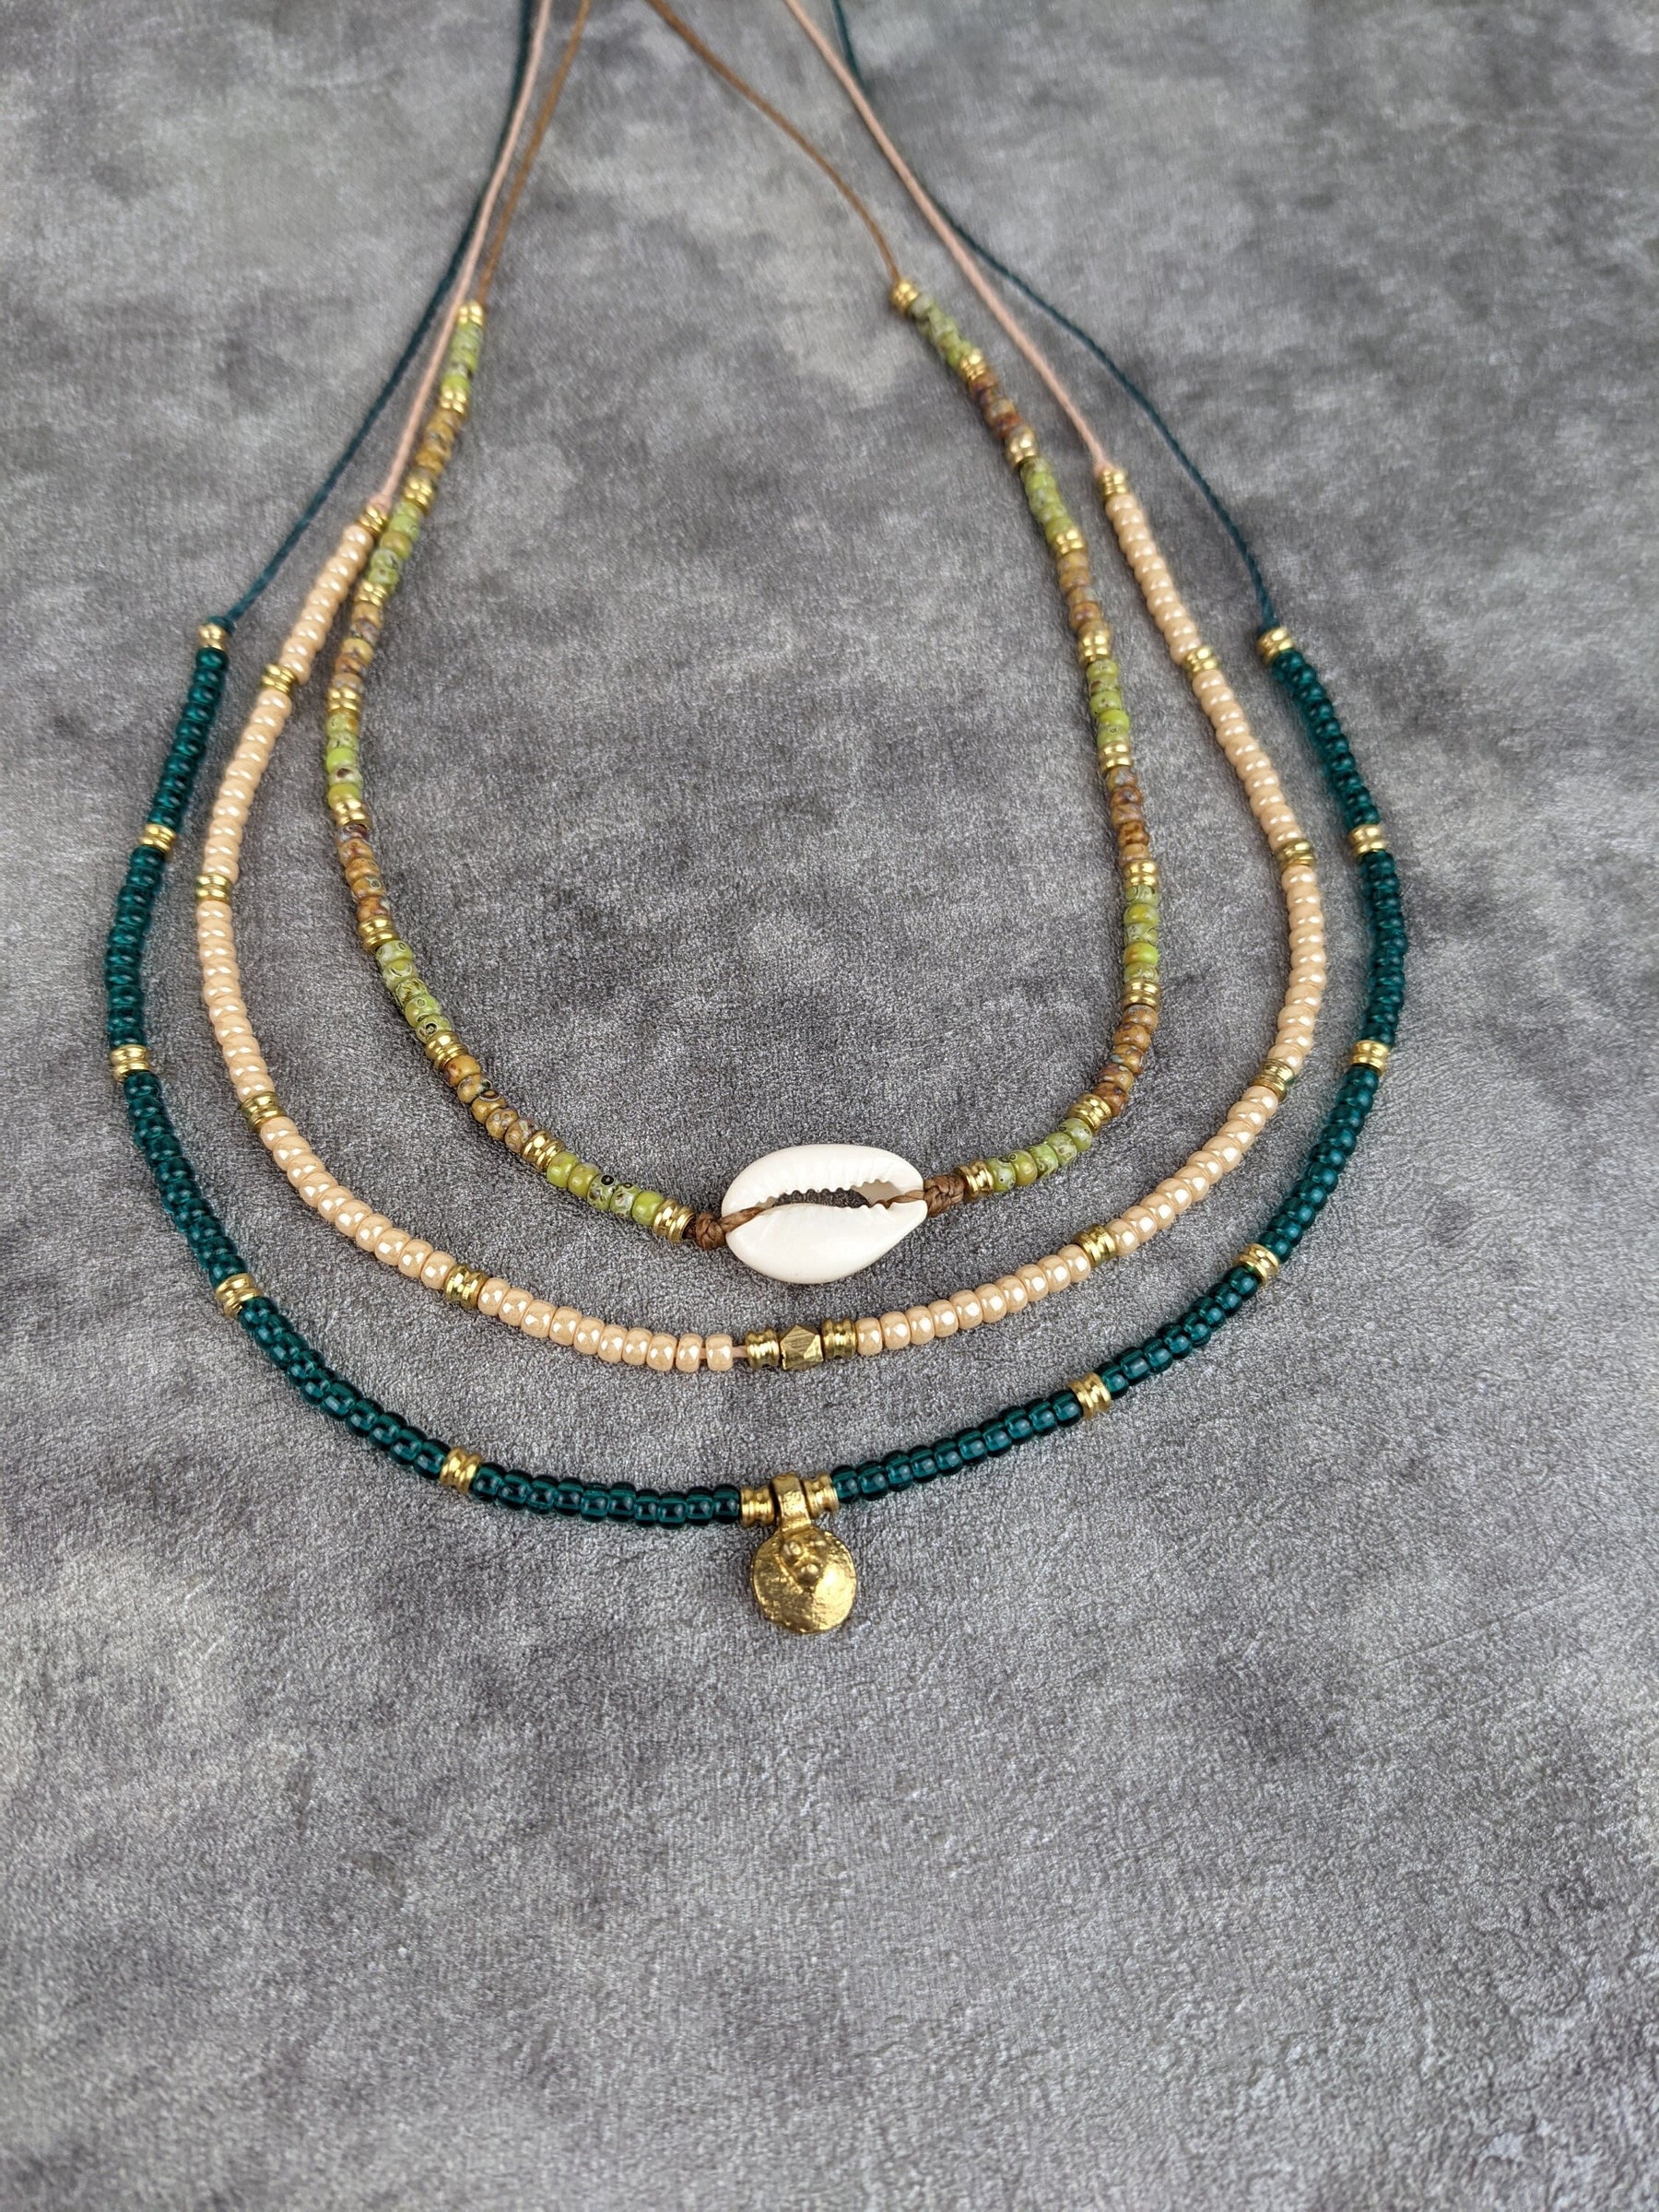 glasperlenkette mit kauri muschel ung grünen und braunen glasperlen sowie goldenen messingperlen